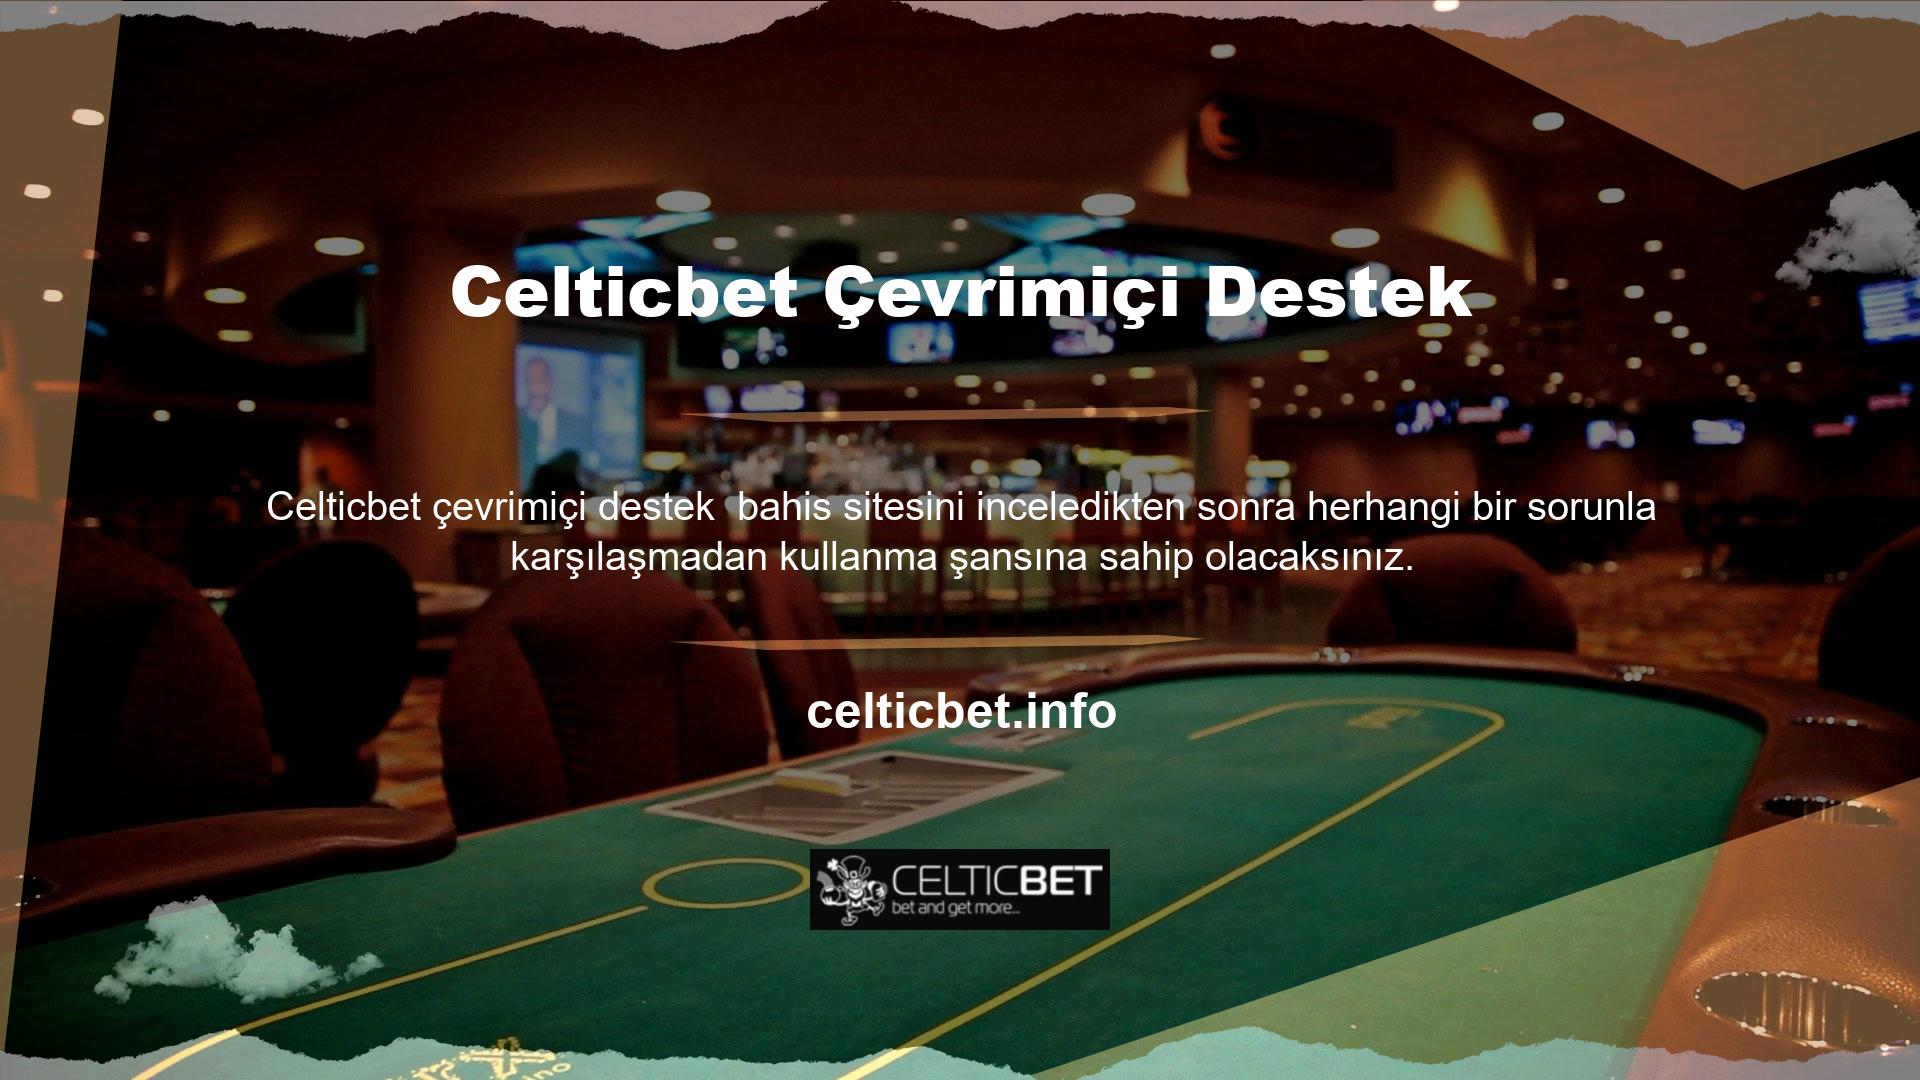 Siteyle ilgili sorularınız varsa Celticbet canlı destek hattından rahatlıkla yardım alabilirsiniz